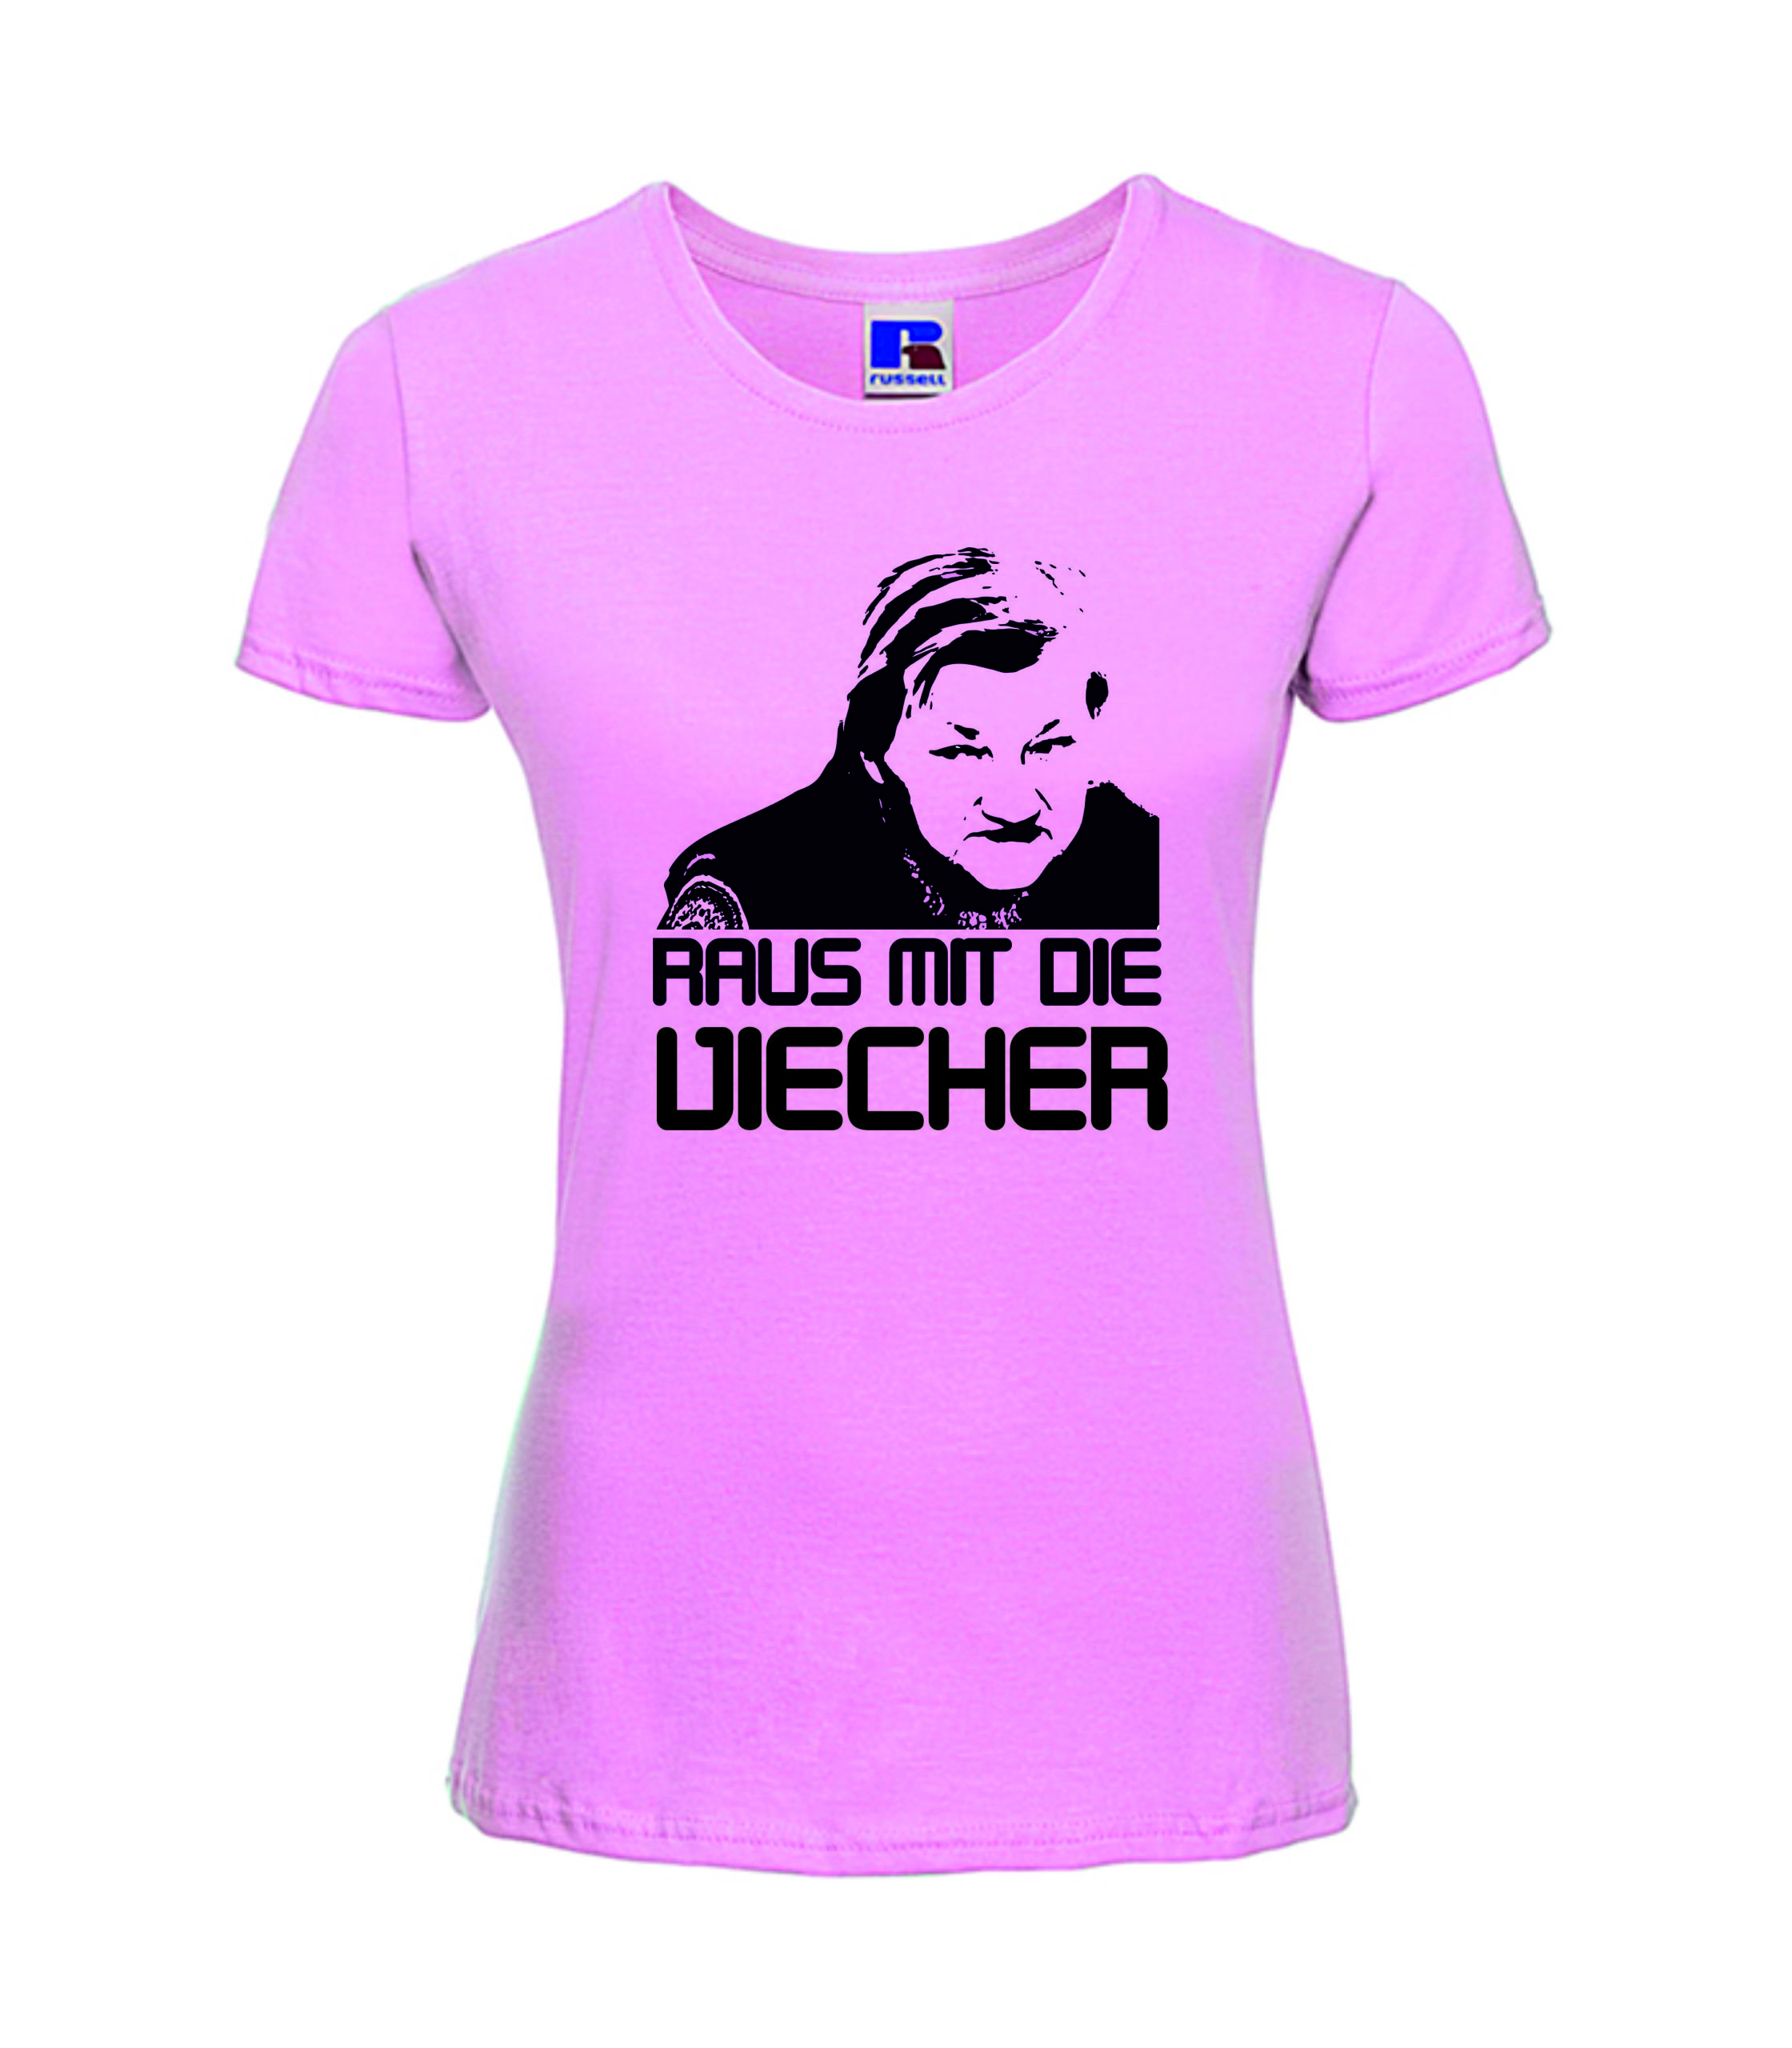 Raus mit die Viecher!!! Rip Karin Ritter T- Shirt